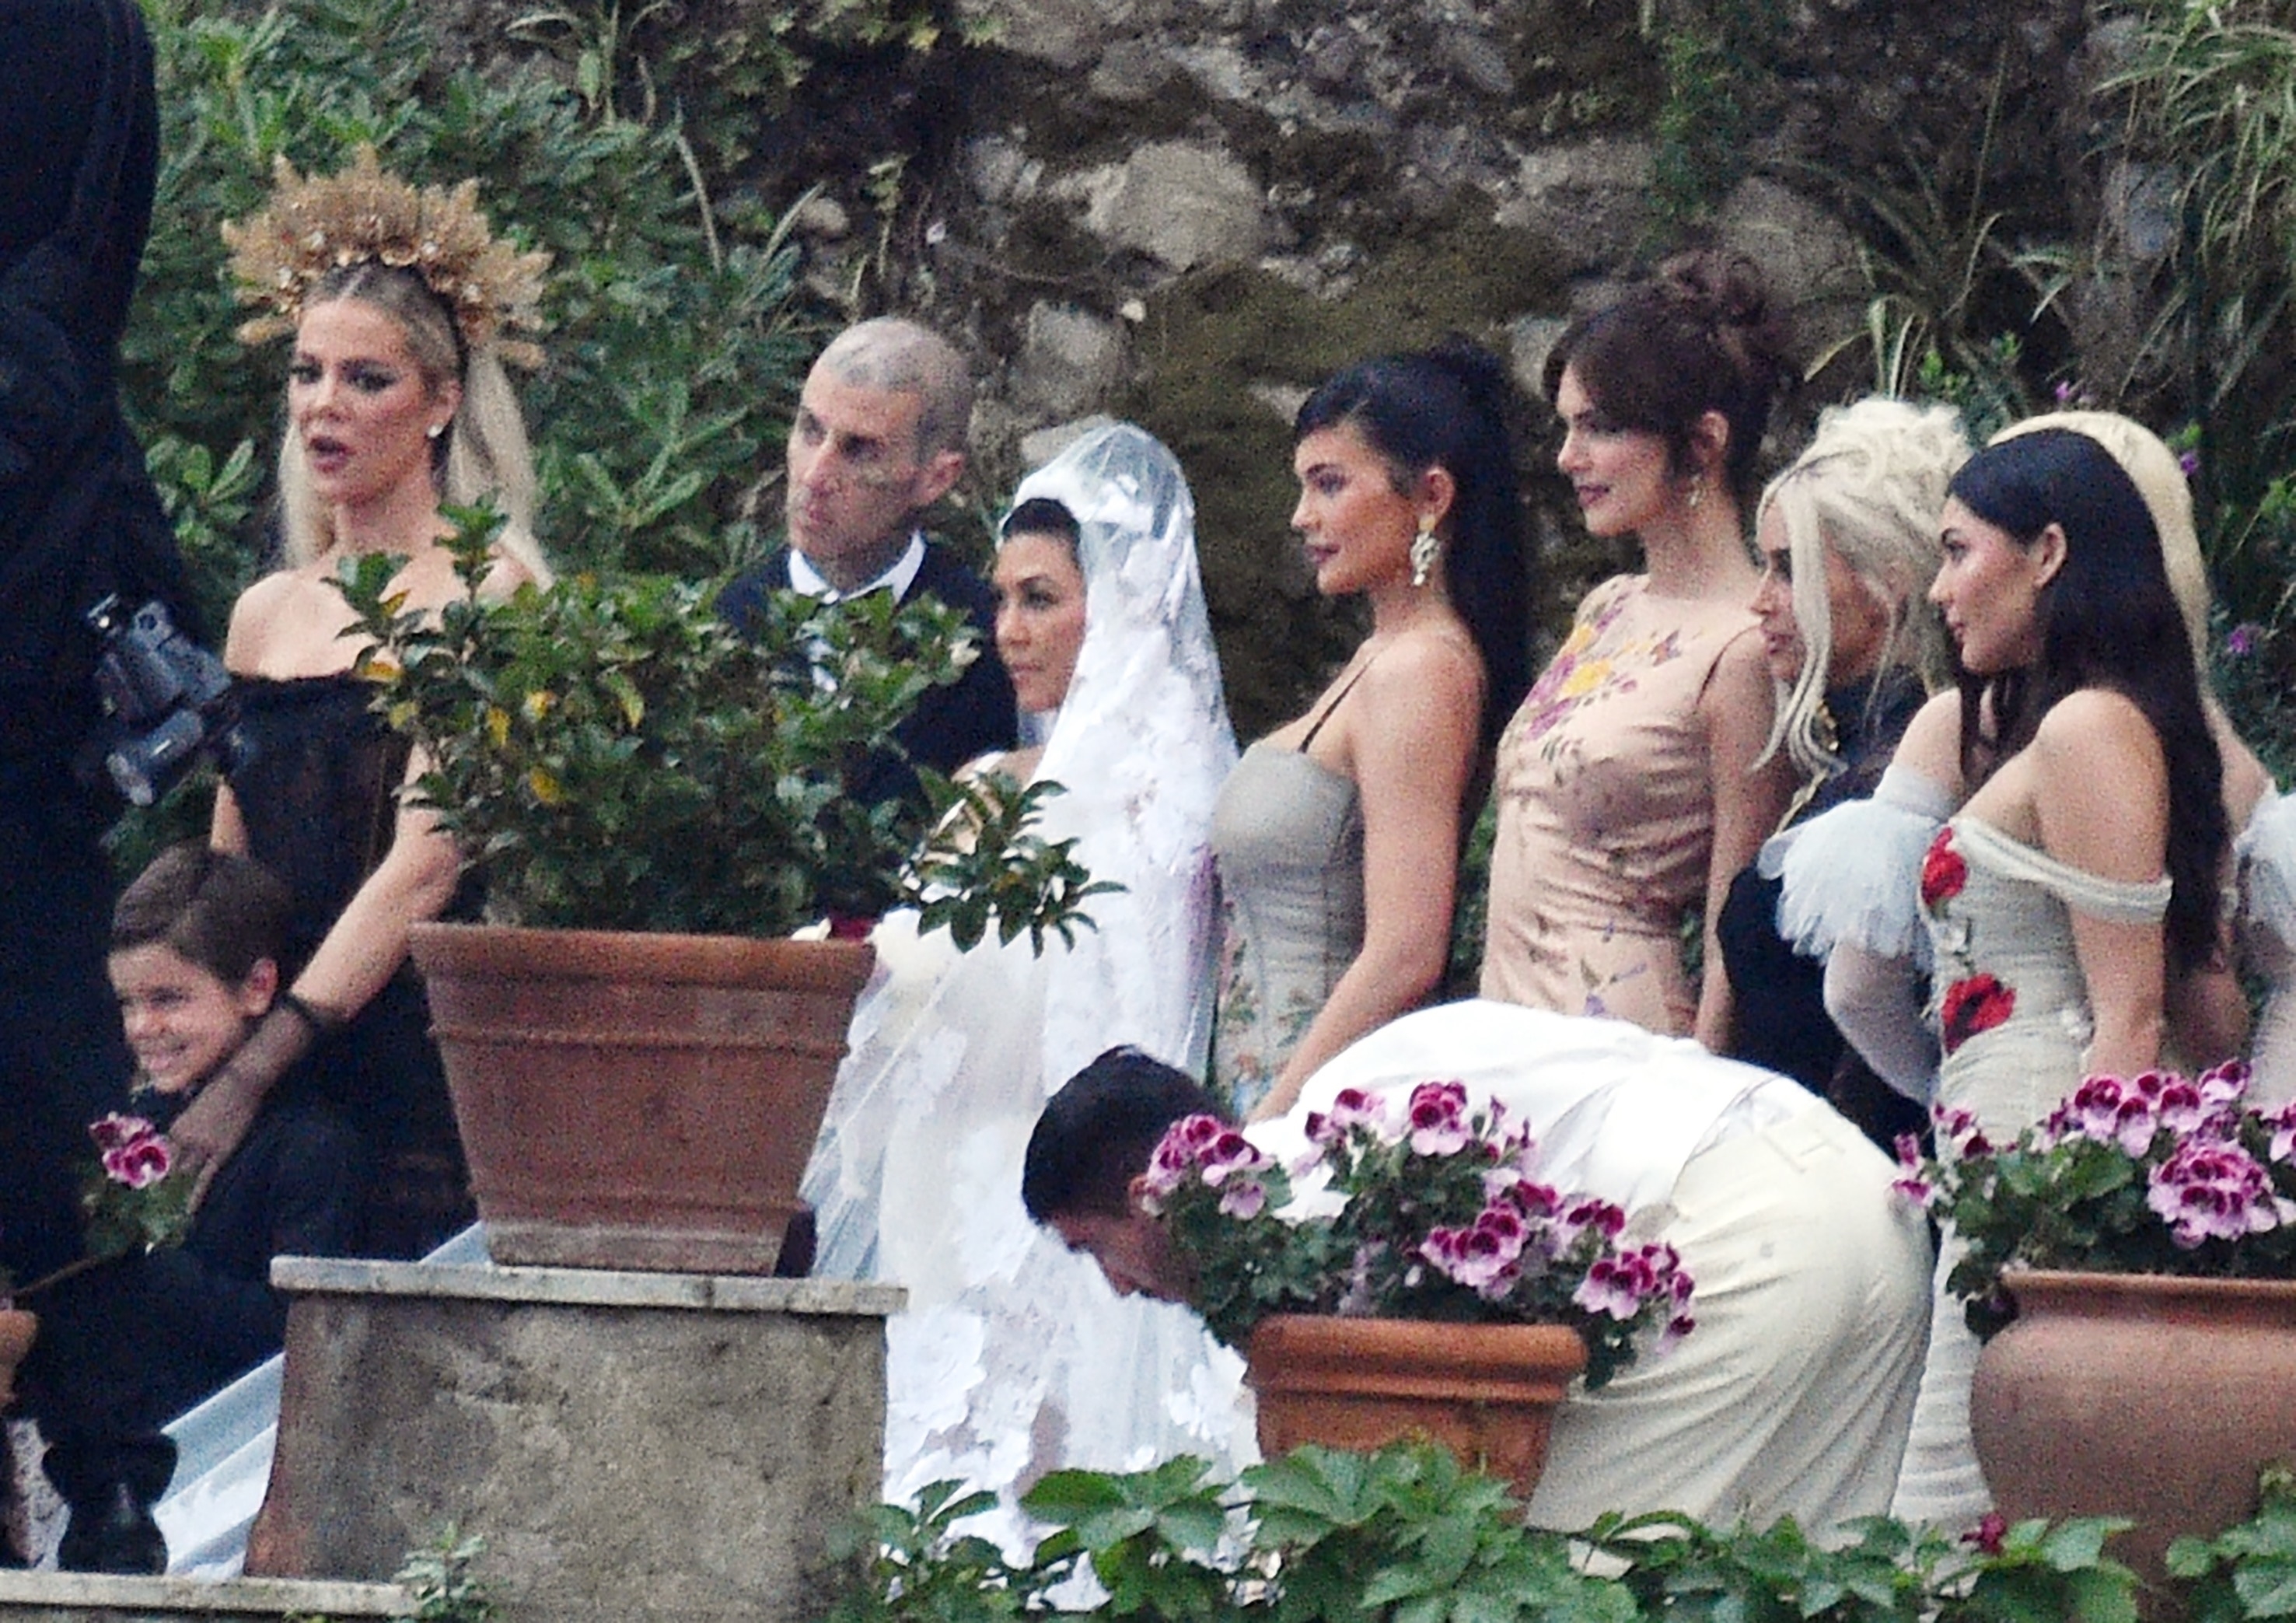 kourtney kardashian wedding dress